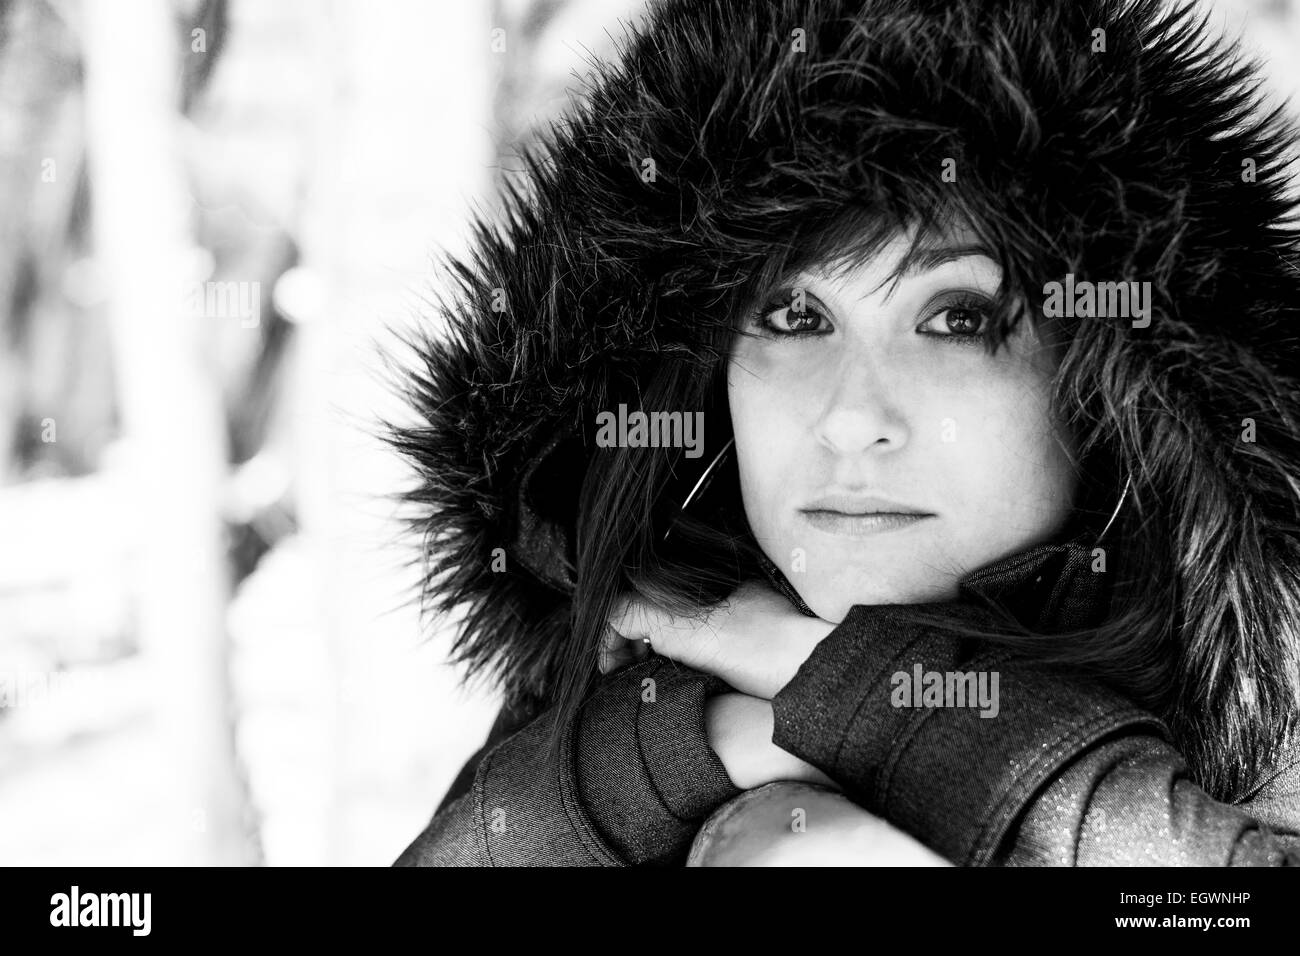 Closeup Portrait von einer hübschen Frau im Winter in Graustufen Stockfoto